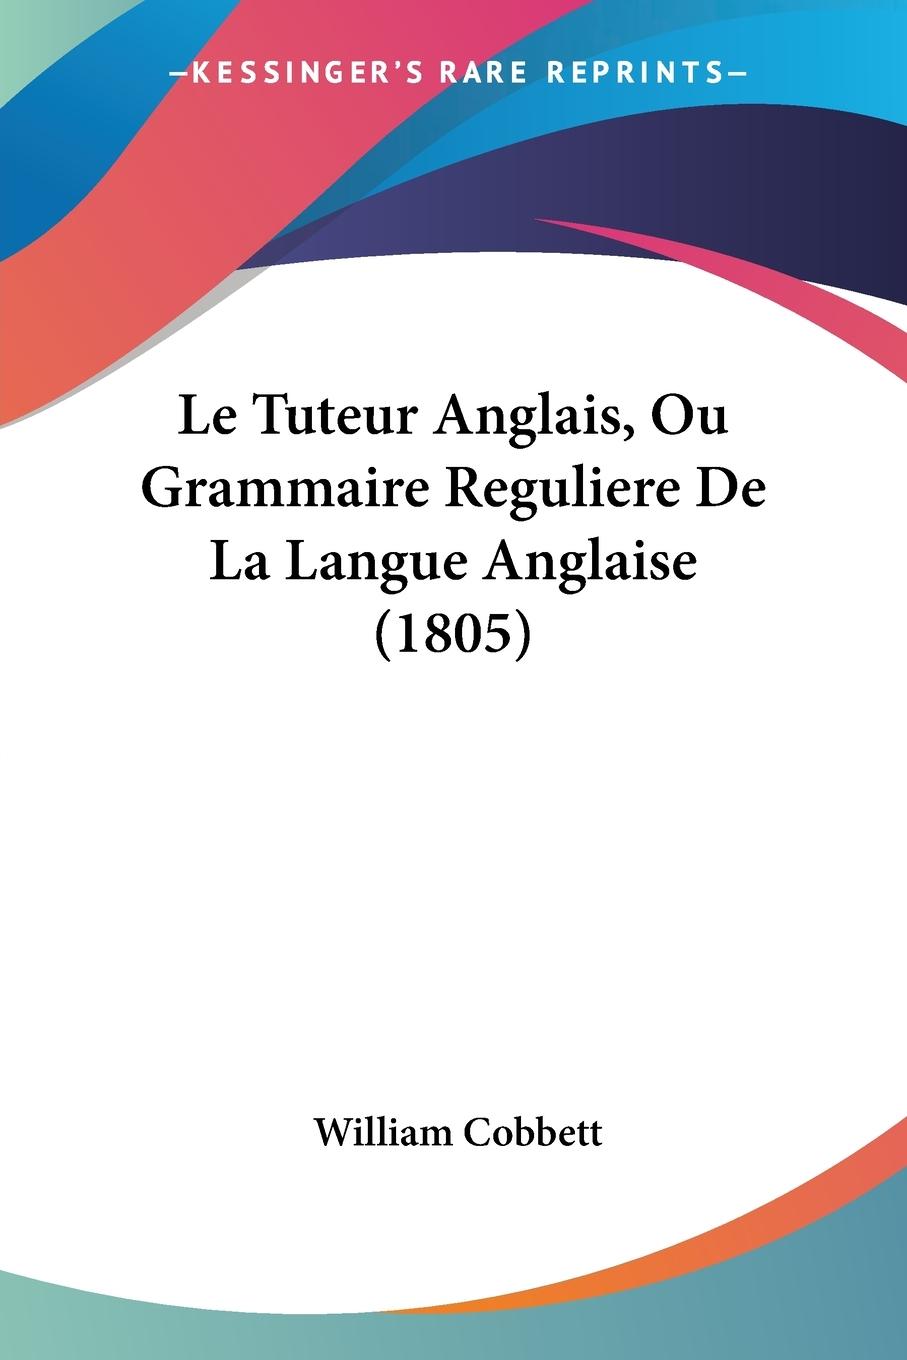 Le Tuteur Anglais, Ou Grammaire Reguliere De La Langue Anglaise (1805) - Cobbett, William